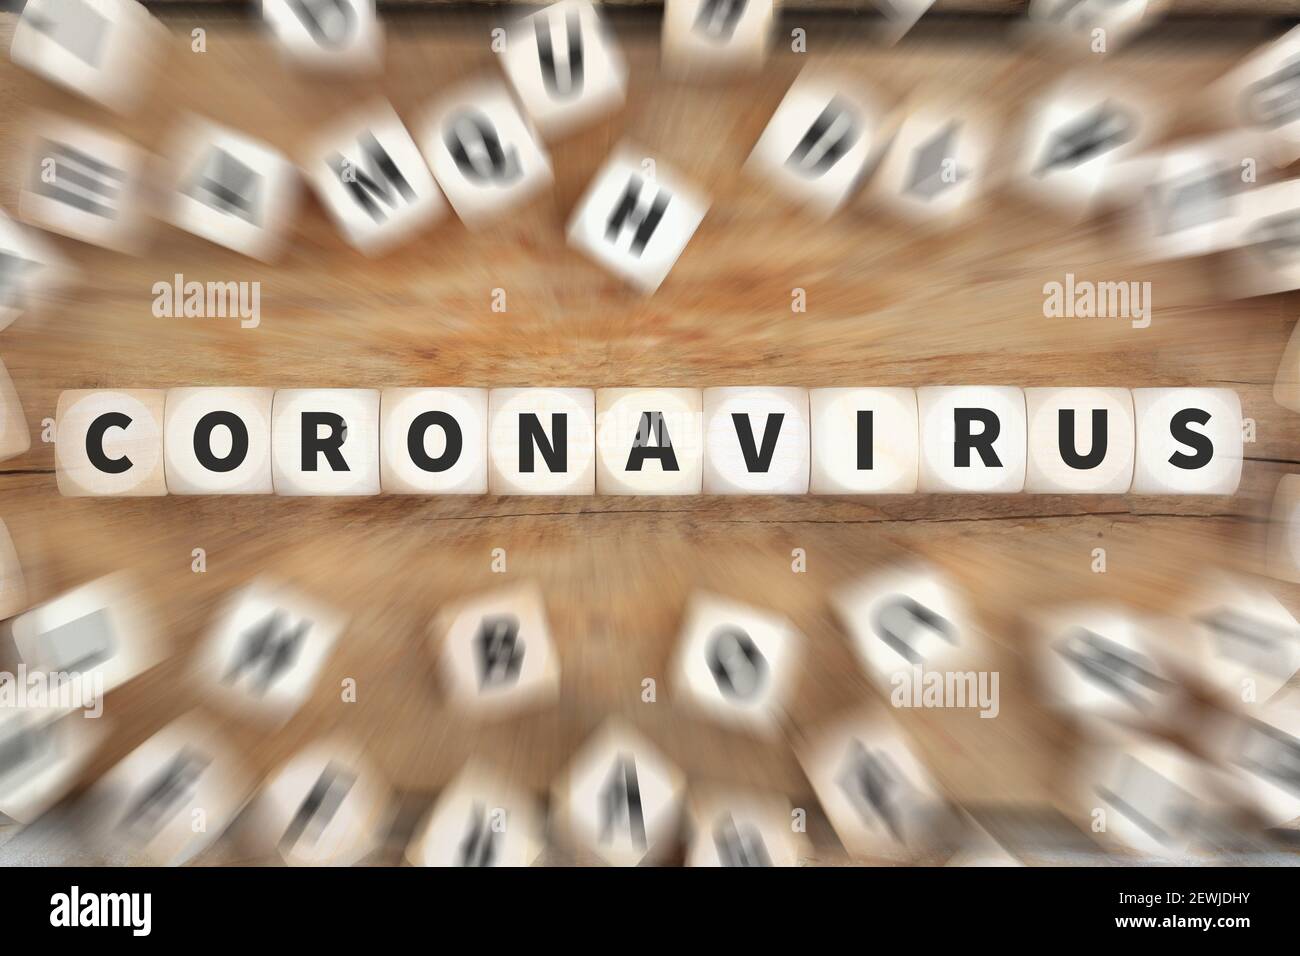 Coronavirus Corona virus disease illness healthy health dice concept idea. Stock Photo